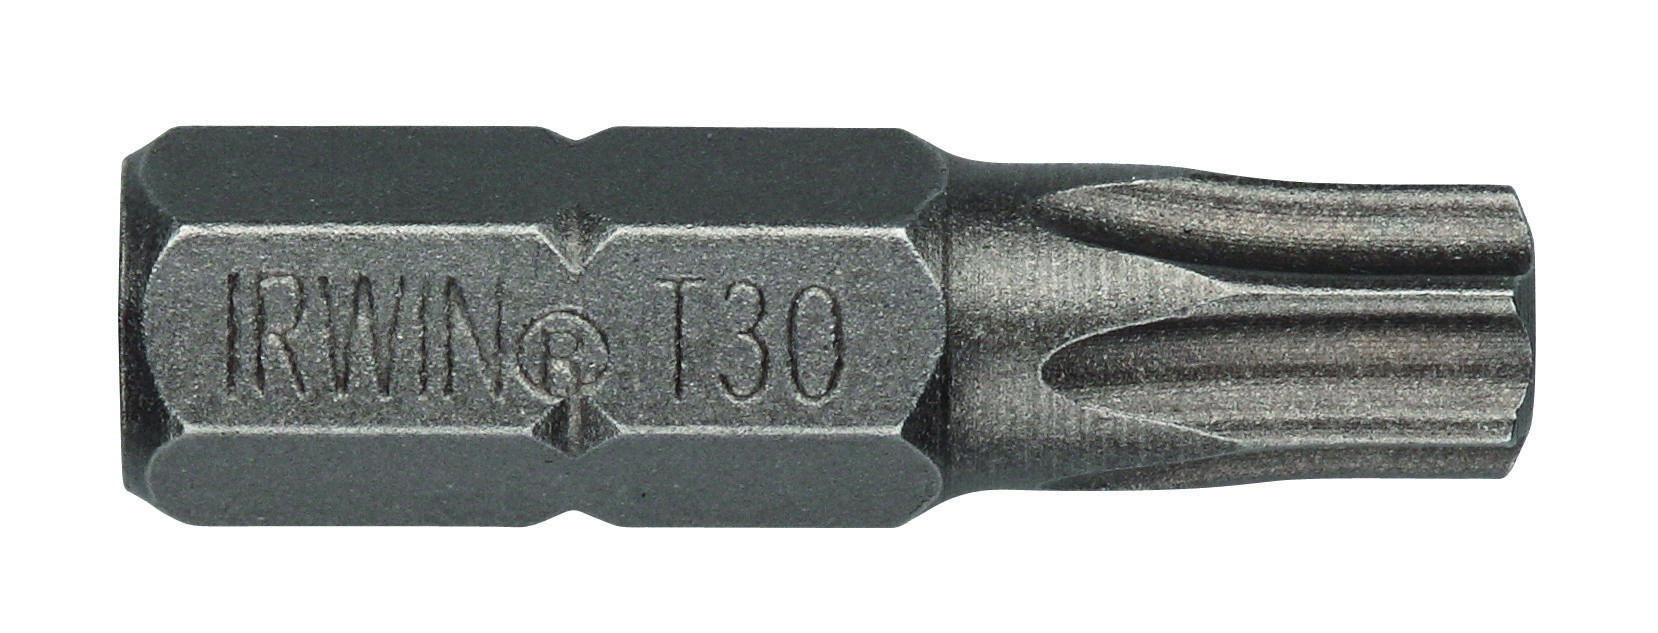 bit nástavec TORX 20  25mm (10ks)  IRWIN 0.09 Kg MAXMIX Sklad14 671143 34